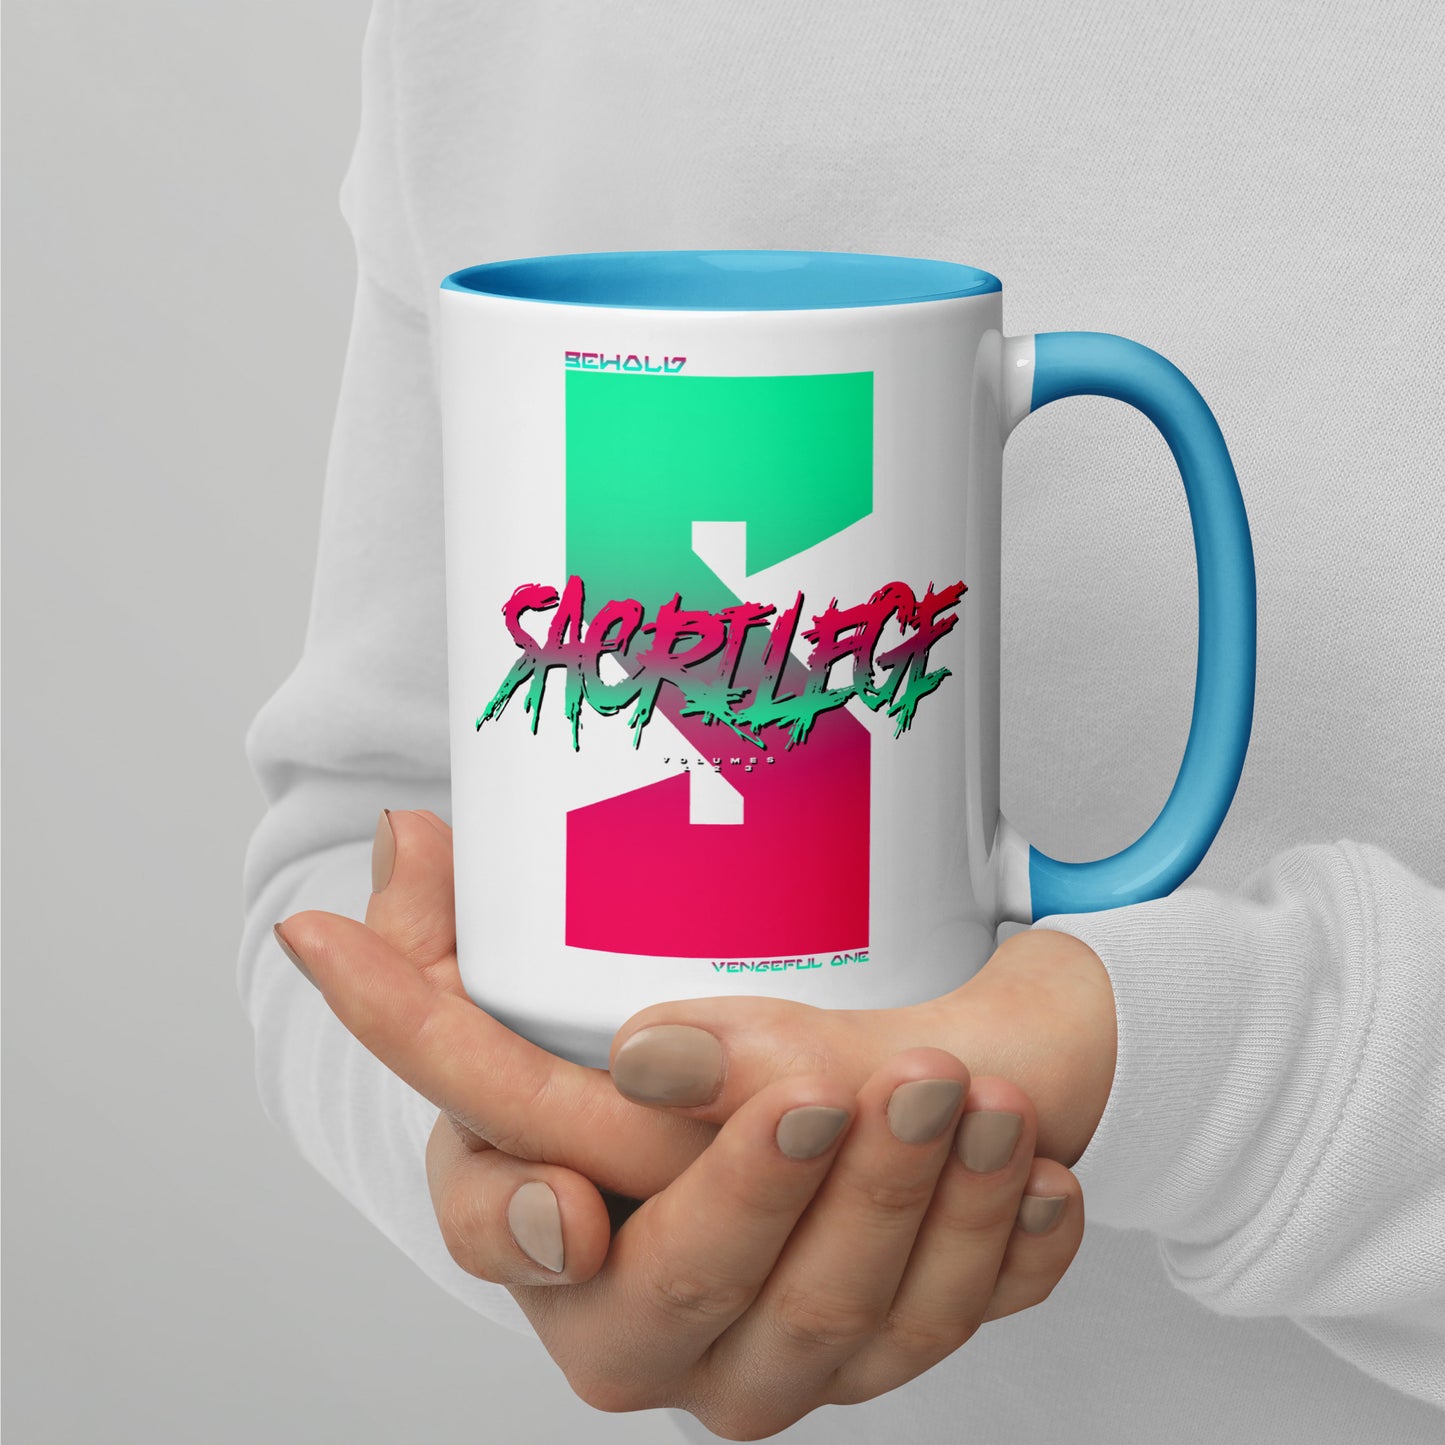 Kian Dray - Sacrilege S Logo Mug With Color Inside